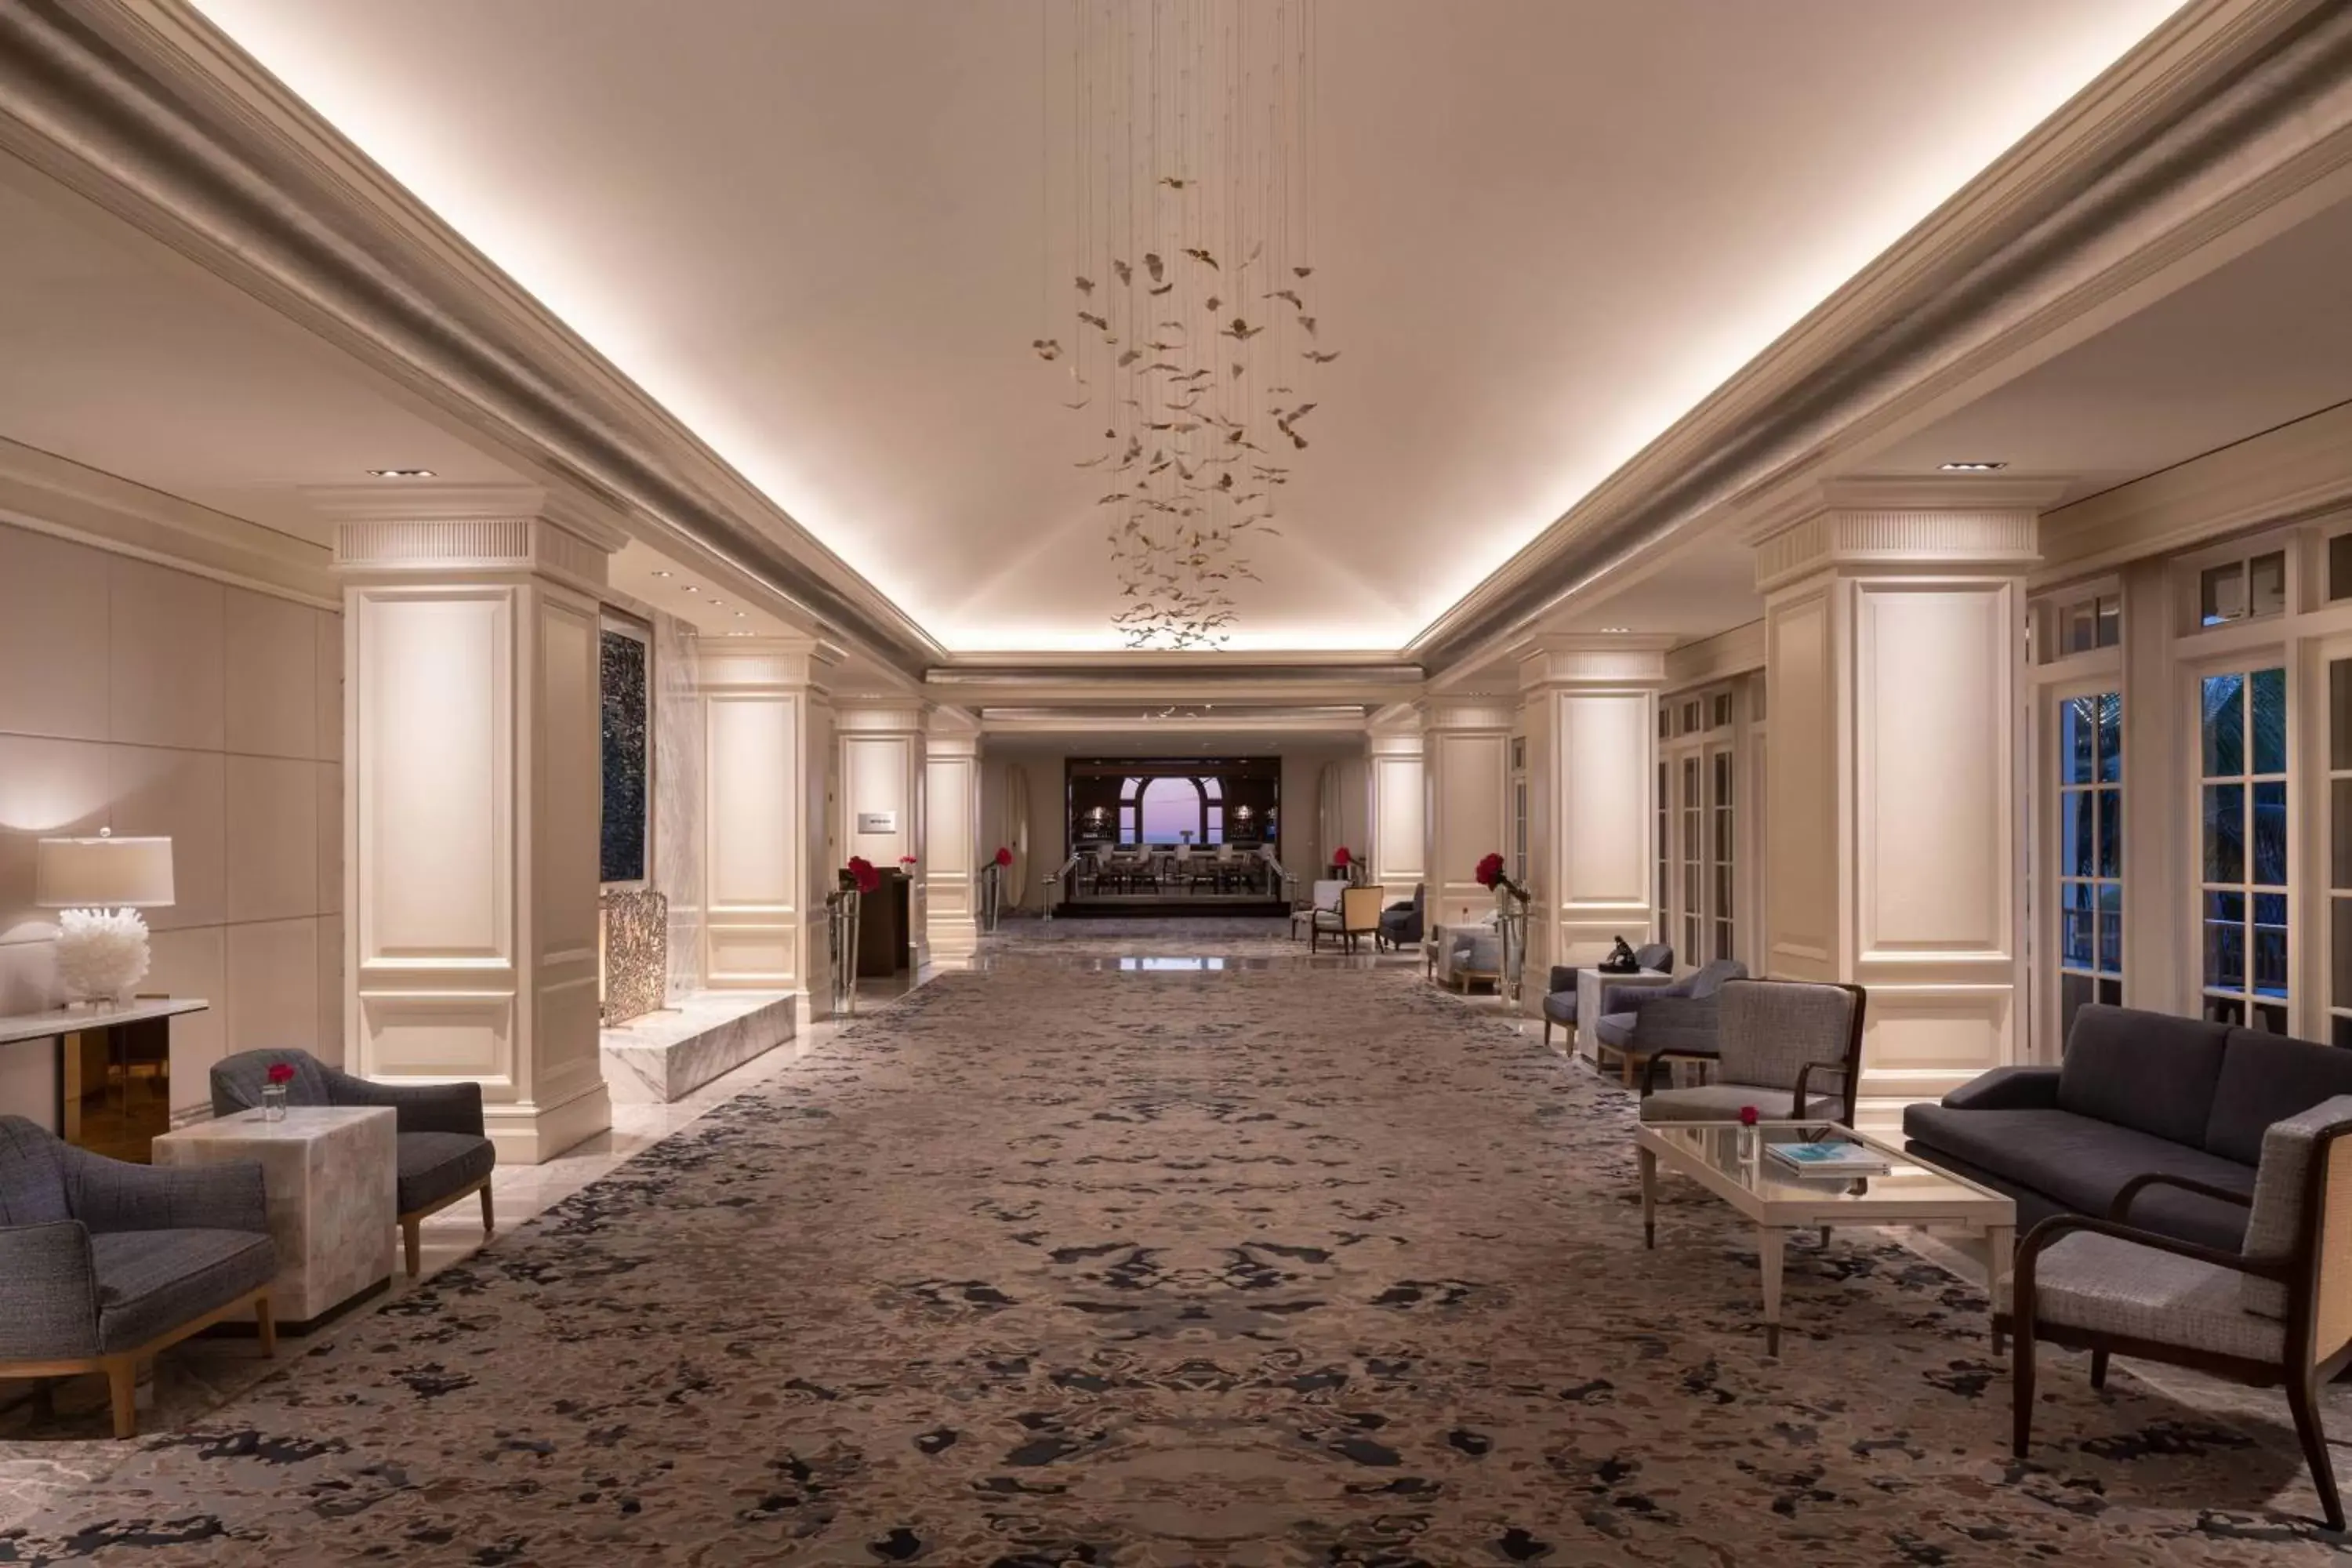 Lobby or reception in The Ritz-Carlton, Laguna Niguel